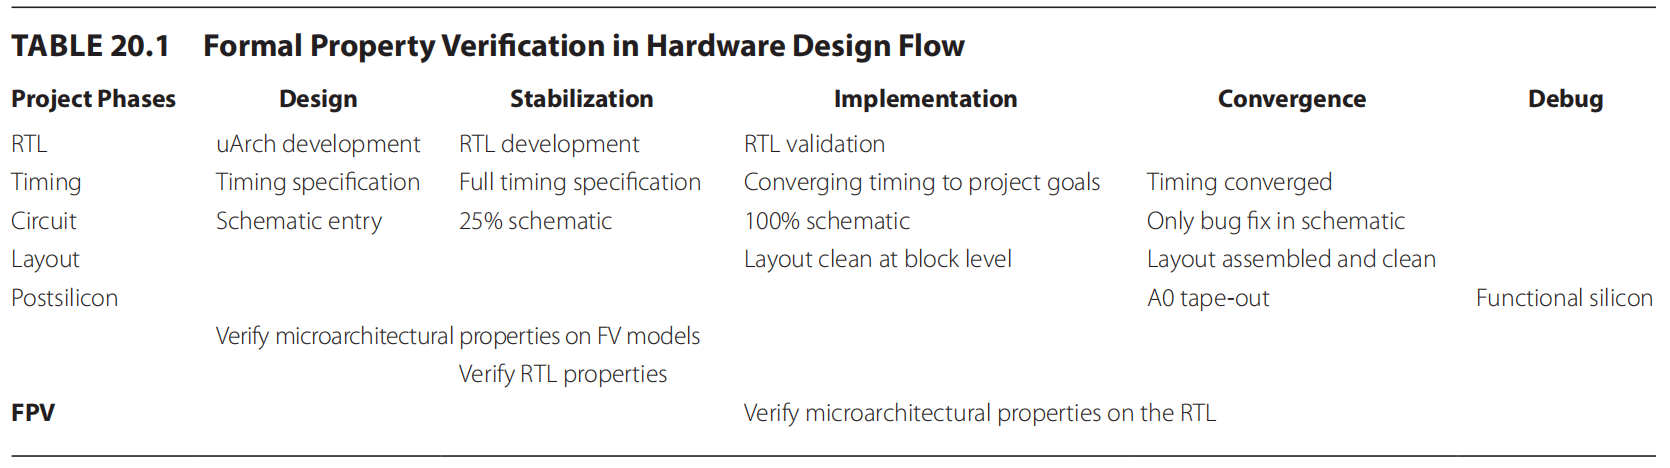 formal property verification in hardware design flow